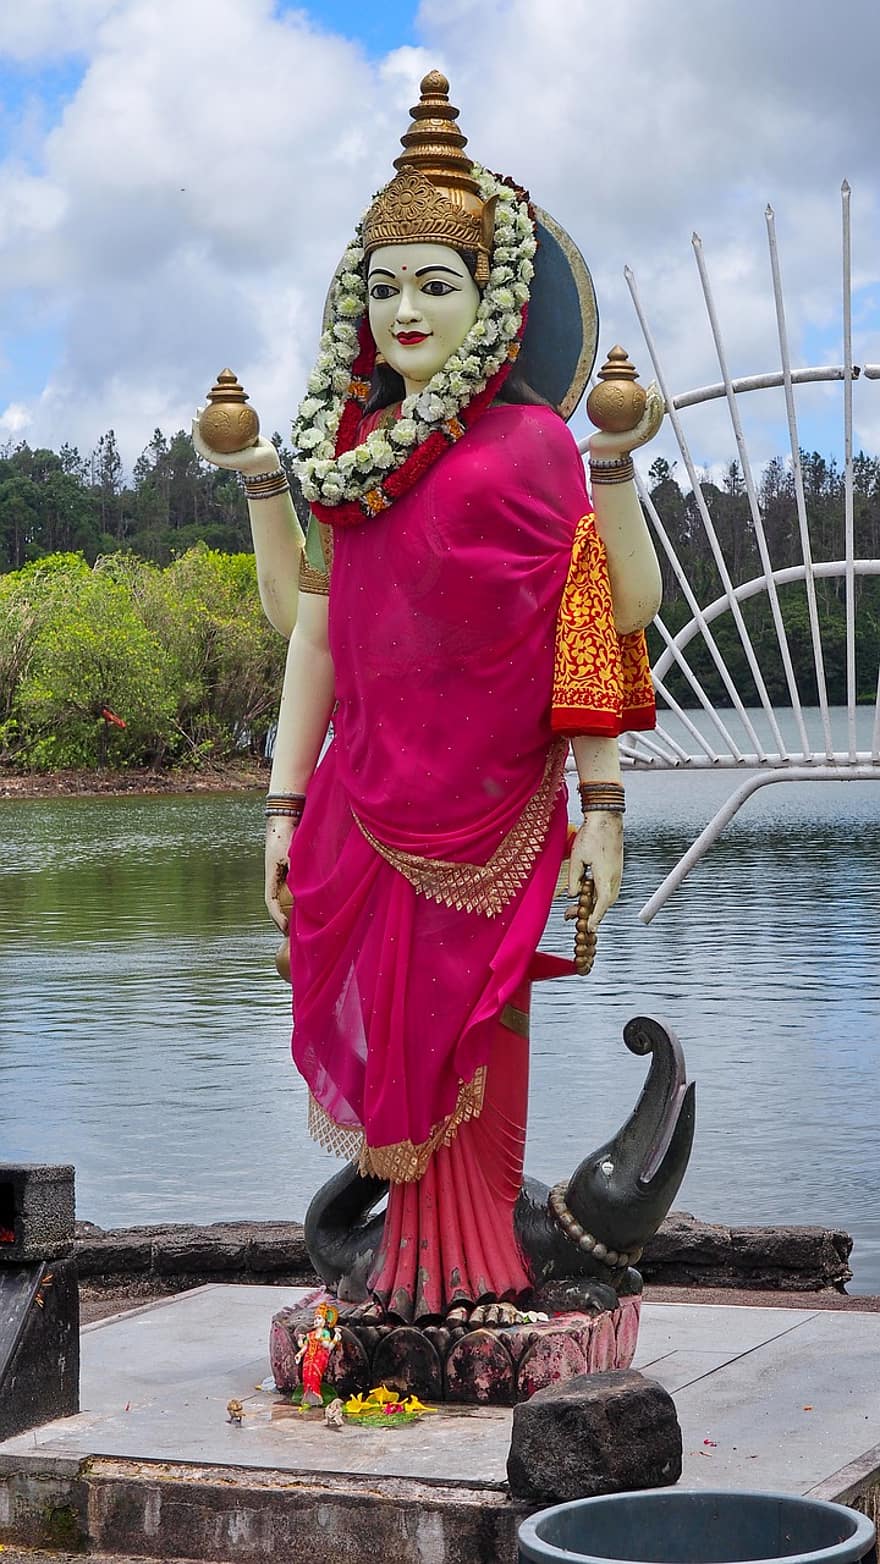 تمثال ، ضفه النهر ، الشكل ، حضاره ، الثقافات ، الهندوسية ، دين ، الثقافة الأصلية ، نساء ، الروحانية ، الثقافة الهندية